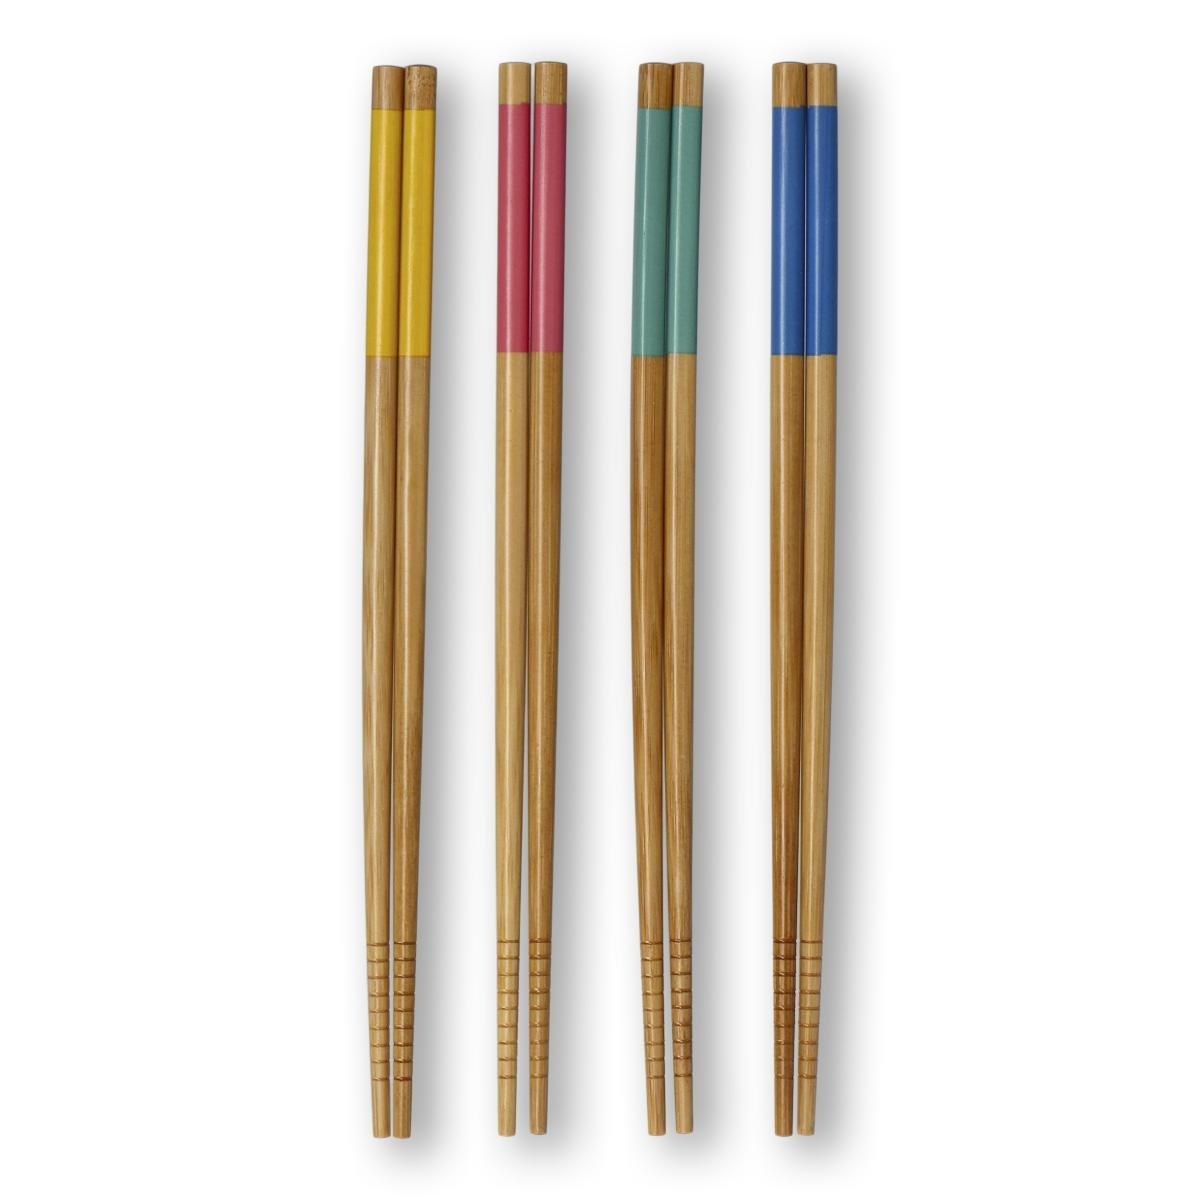 Bamboo chopsticks set